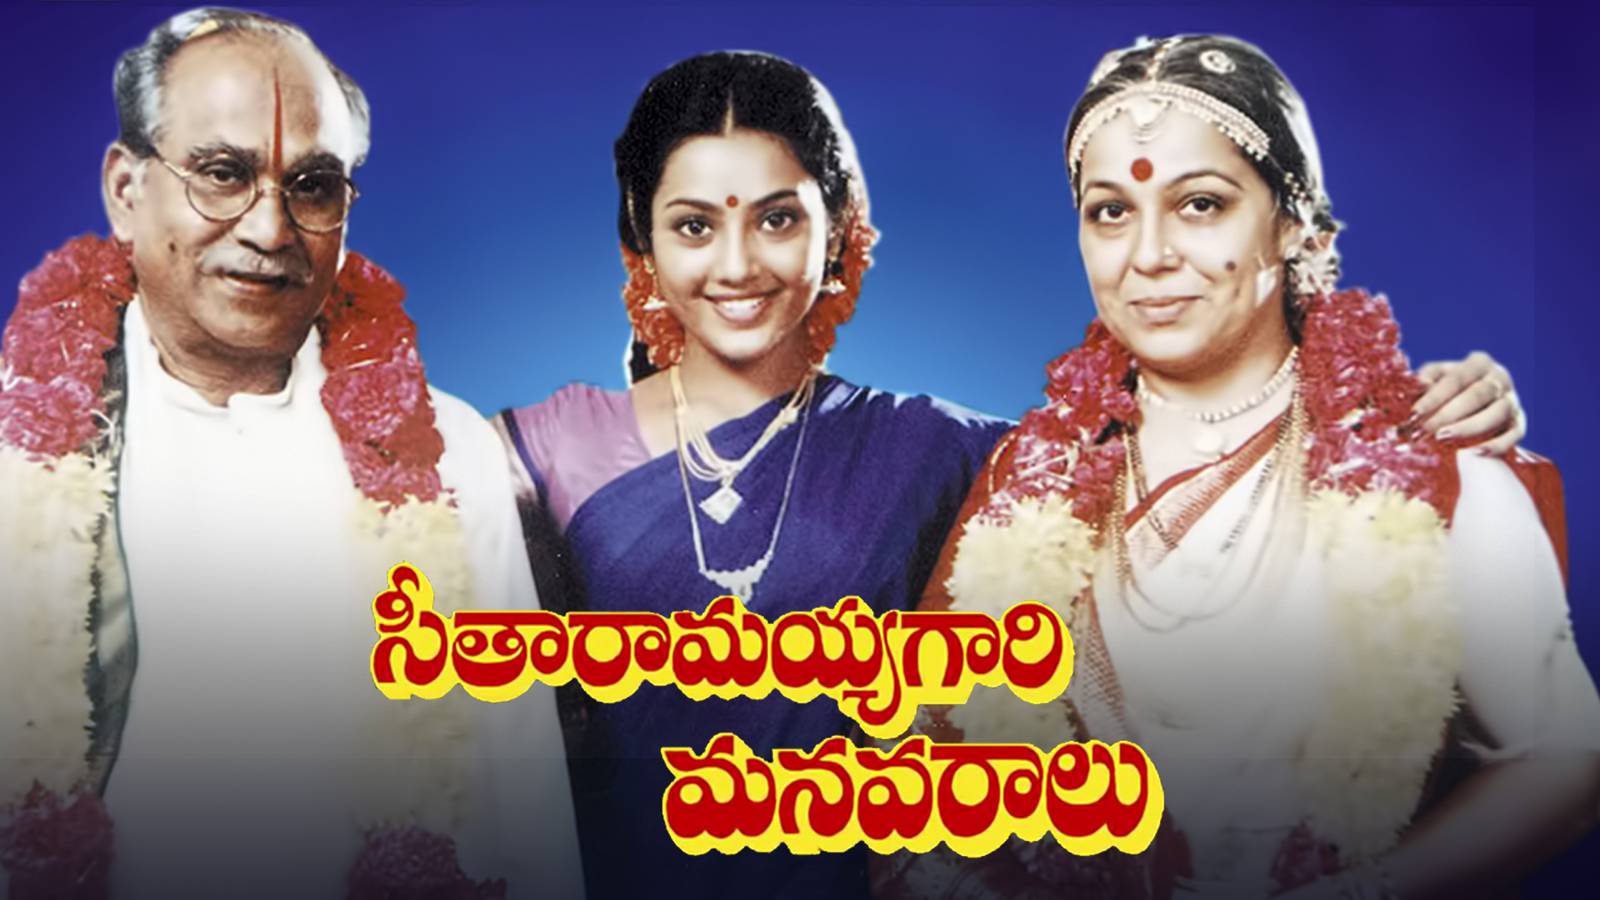 Seetharamayya Gari Manavaralu - SparkOTT